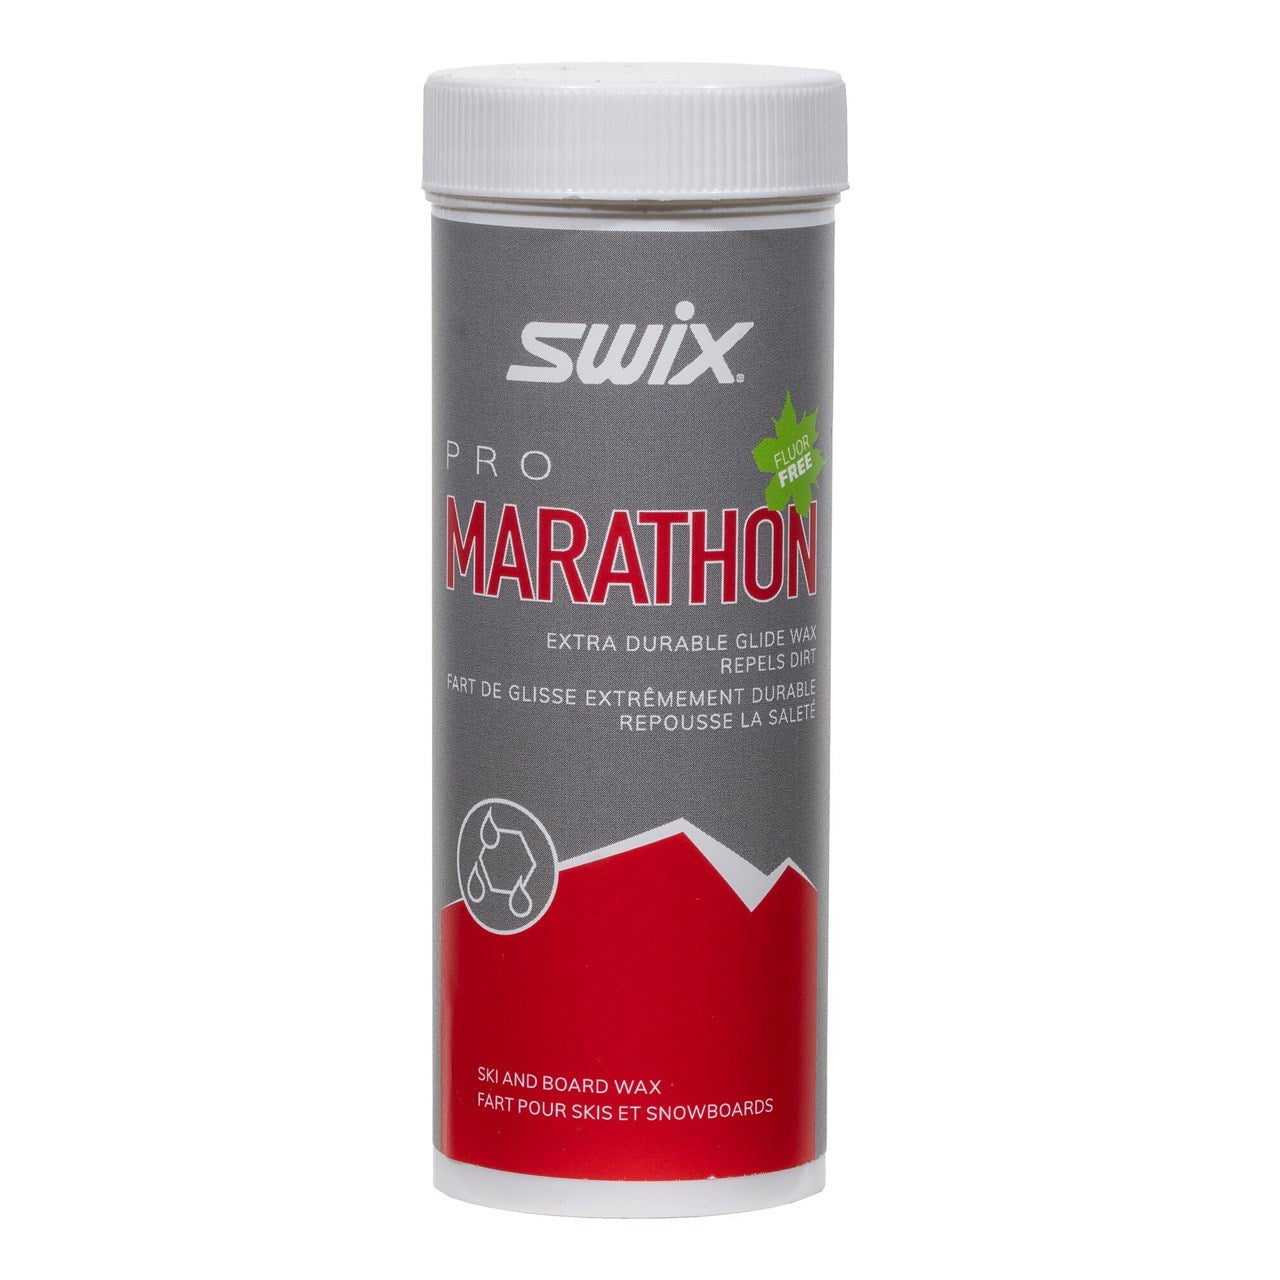 Swix Marathon Black Powder Wax - 40g DHPB-4 SKI & SNOWBOARD WAX Swix   